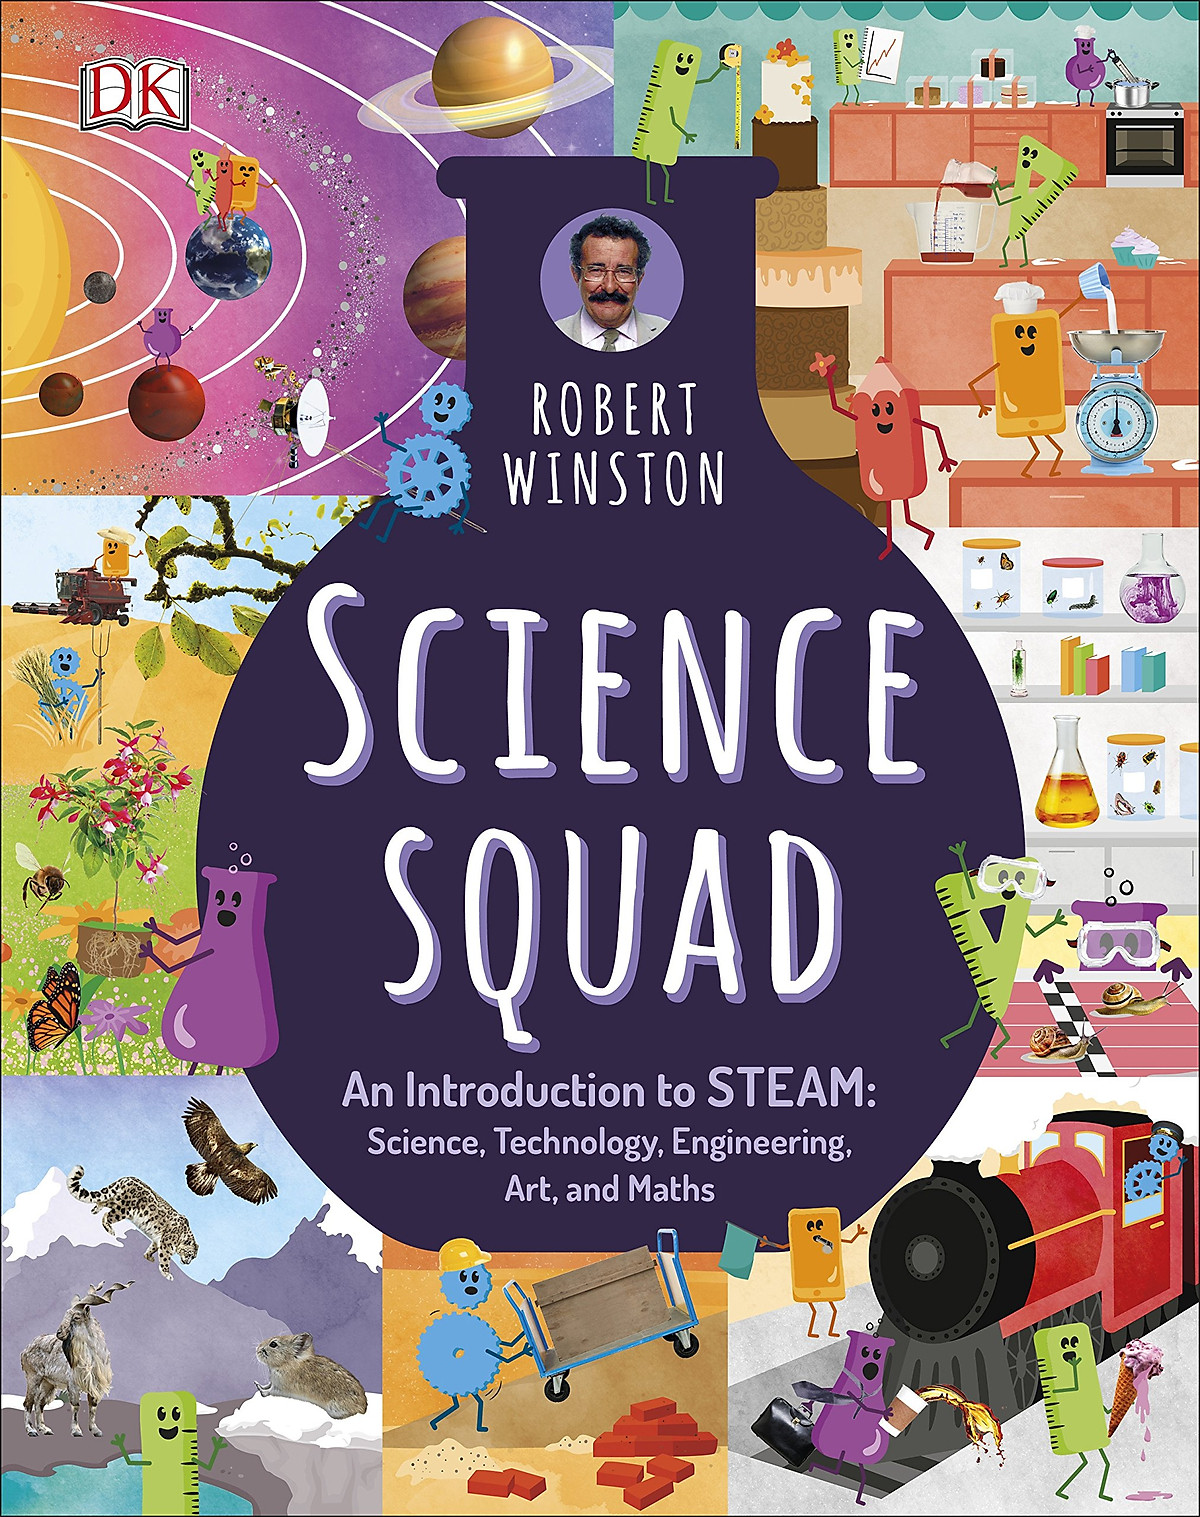 Sách Science Squad - Một Cuốn Sách Vô Cùng Hấp Dẫn Về Chủ Đề STEAM Với Biệt Đội Khoa Học Của Robert Winston Dành Cho Trẻ Từ 7 Tuổi - Á Châu Books, Bìa Cứng, In Màu